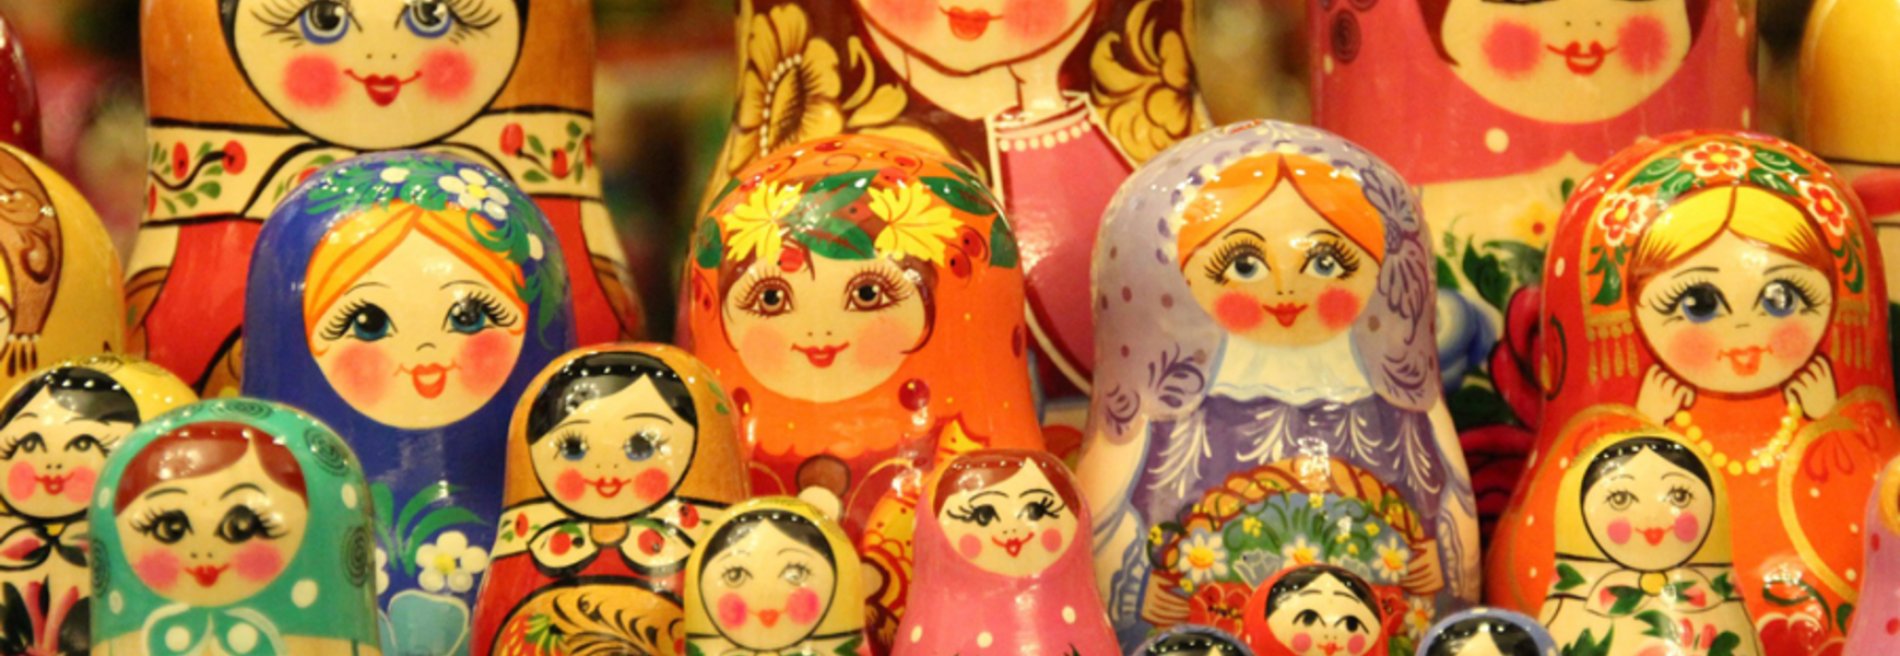 Матрёшка. История русской игрушки, покорившей мир